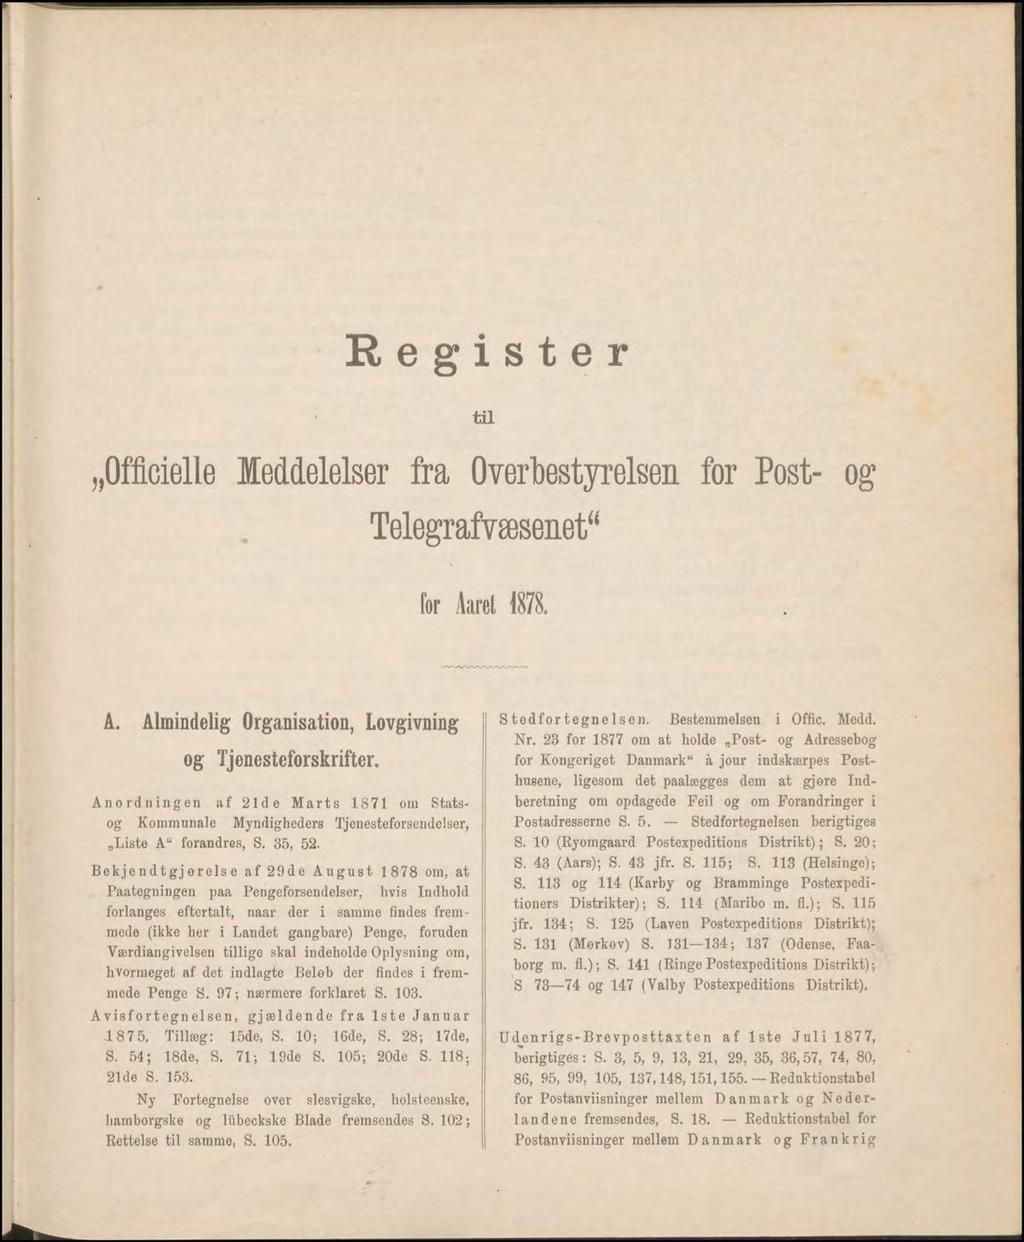 Register til Officielle Meddelelser fra Overbestyrelsen for Post- og Telegrafvæsenet for Aarel 1878. A. Almindelig Organisation, Lovgivning og Tjenesteforskrifter.